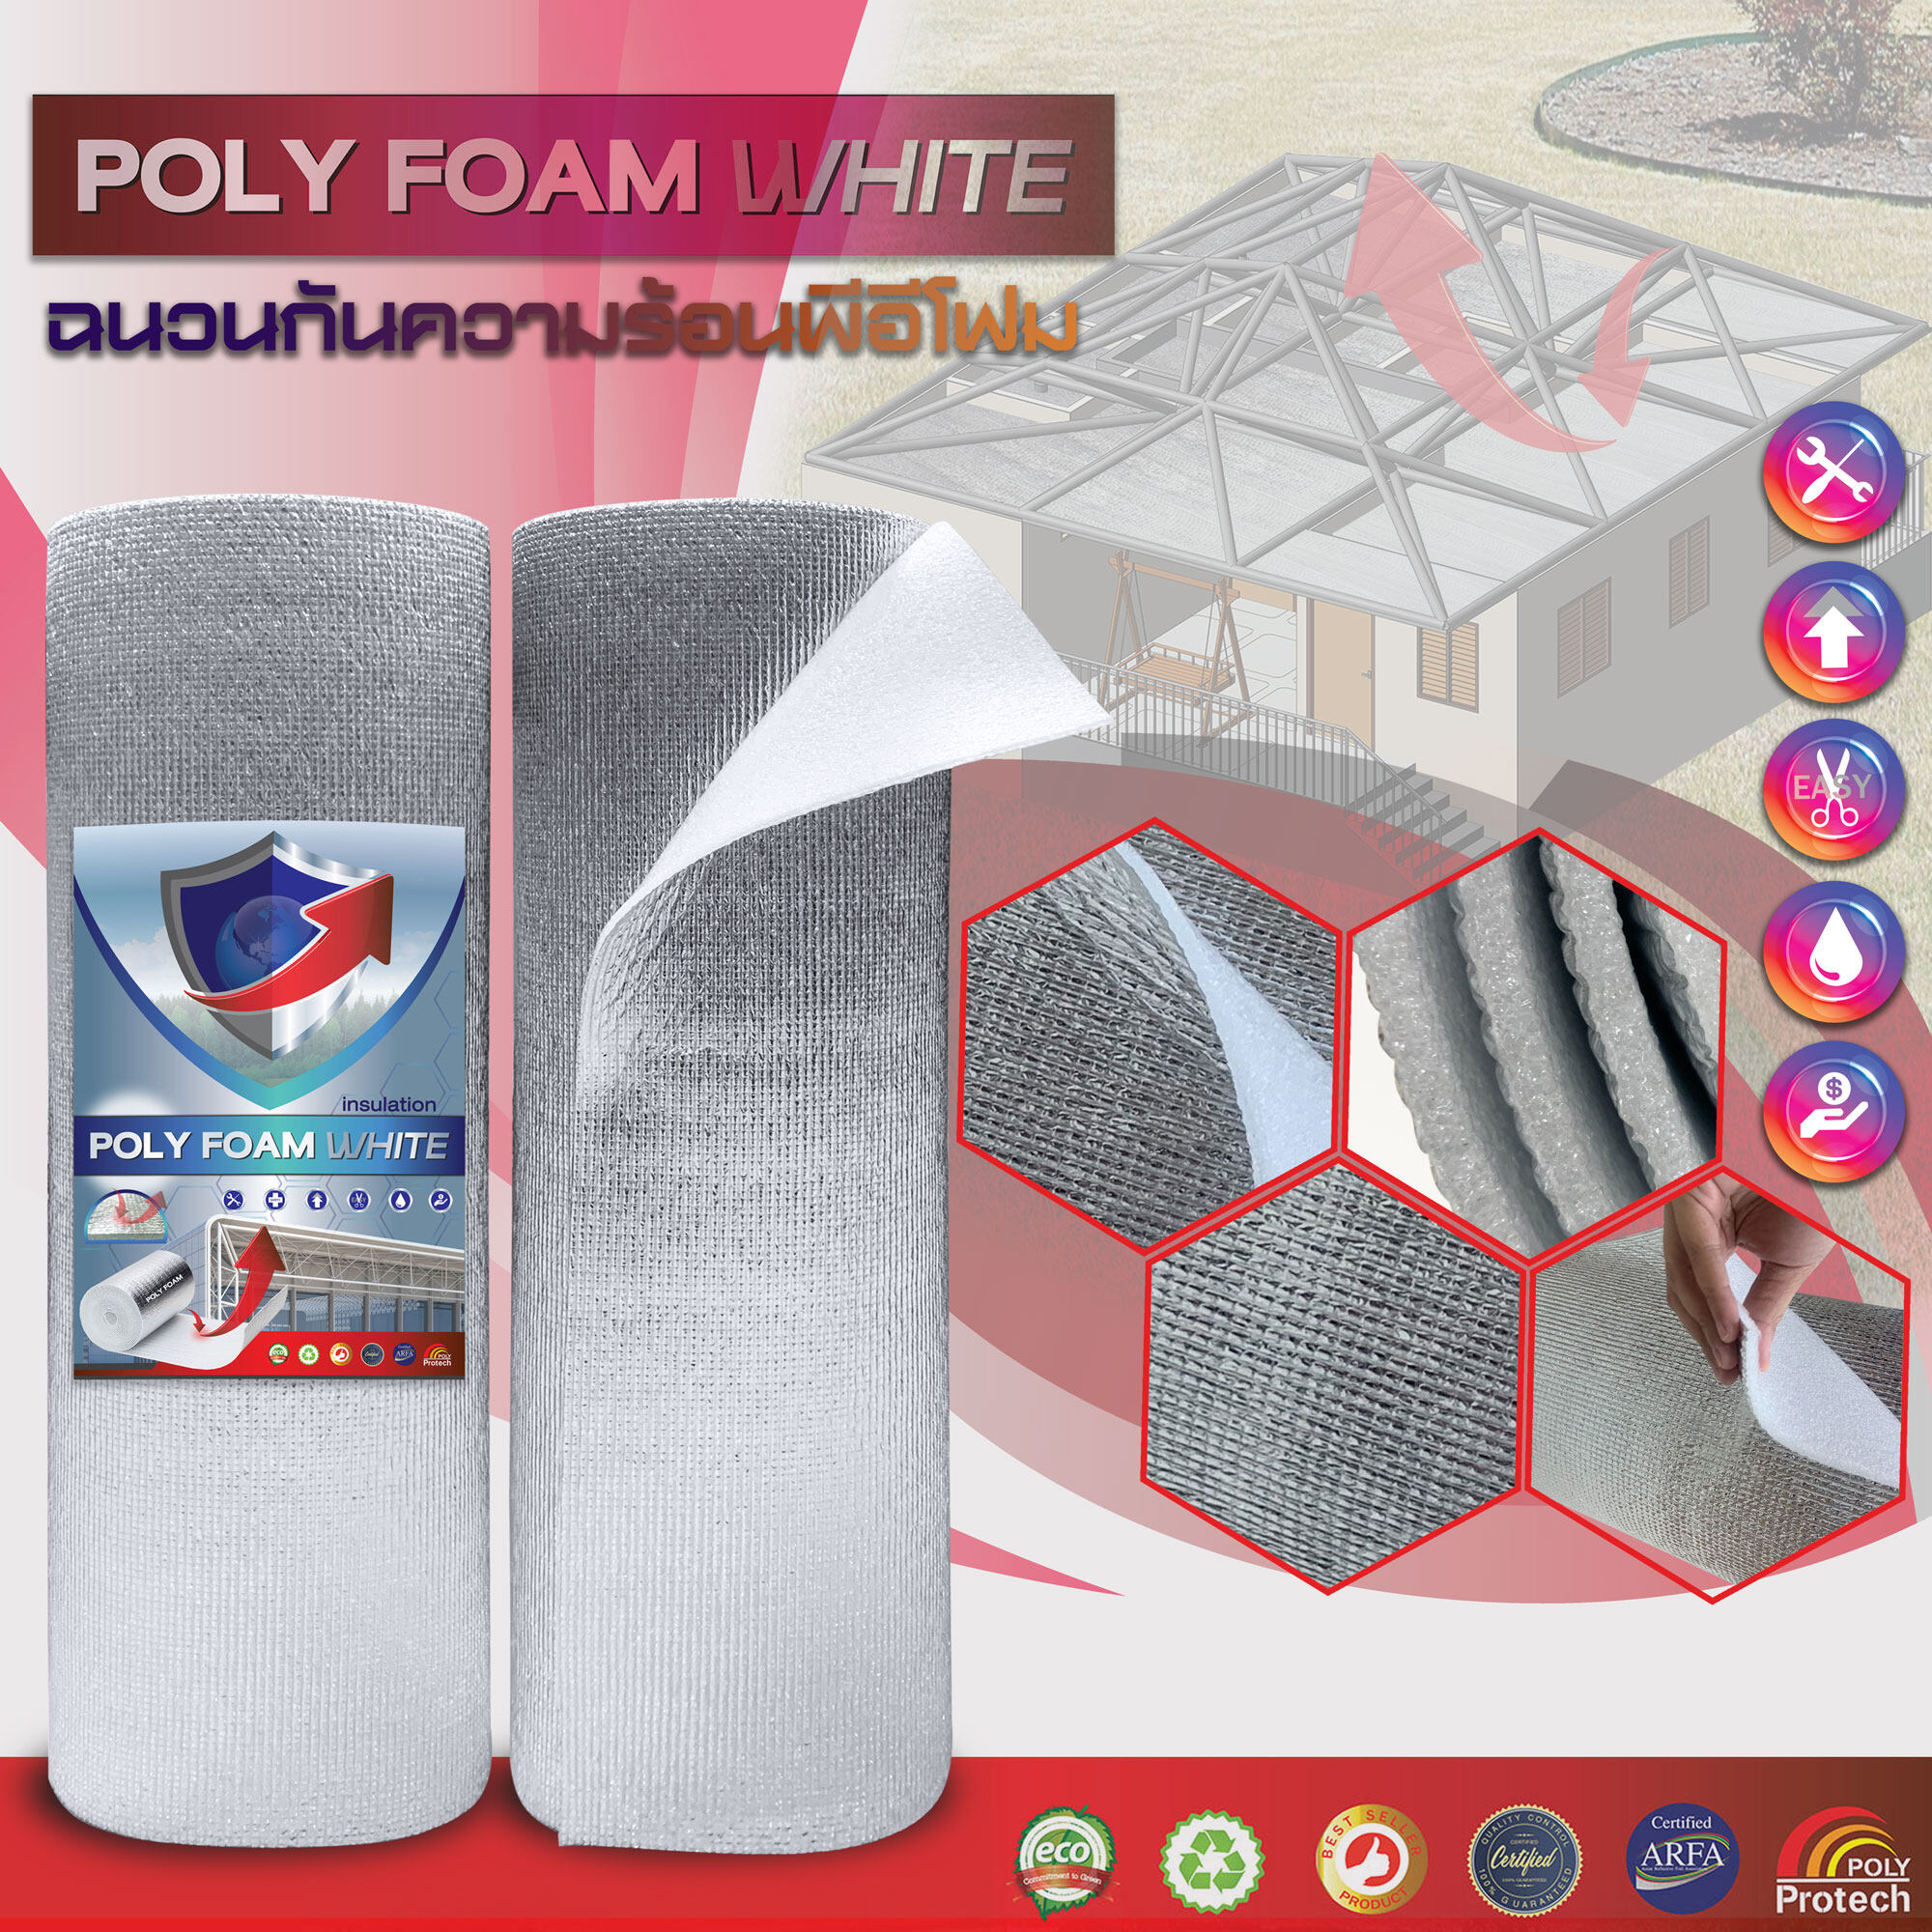 Polyfoam White insulation ฉนวนกันความร้อน PE เคลือบฟอยล์ลดความร้อน หนา 5mm ขนาด 90ซม x 40 ม. ฉนวนกันร้อน